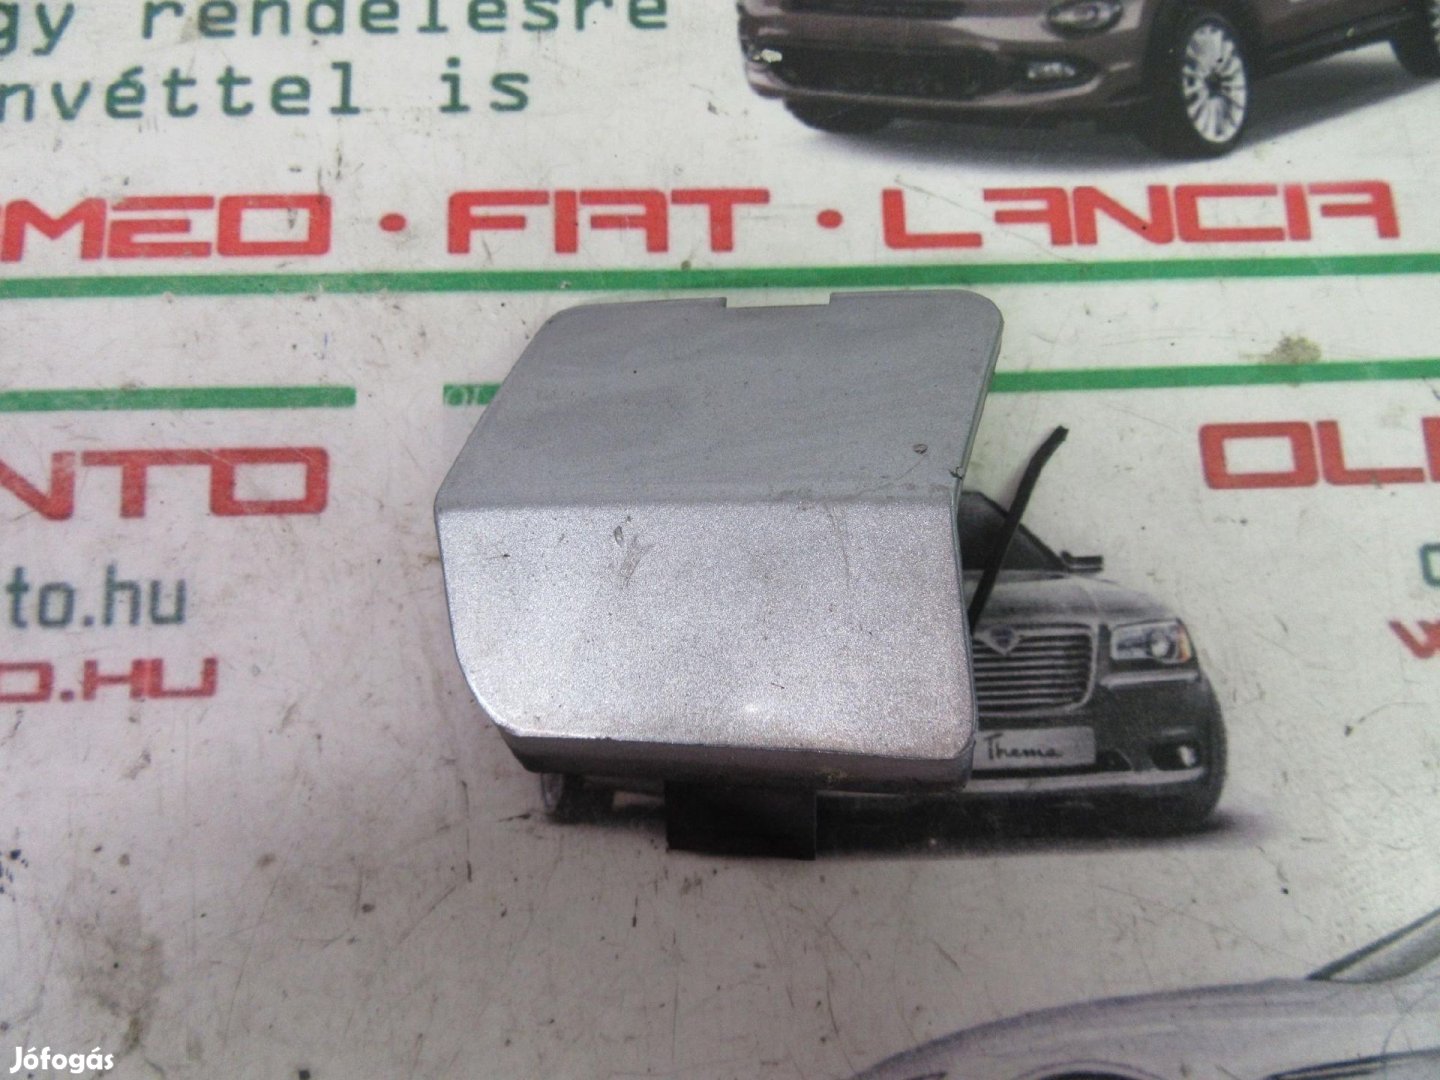 Fiat Stilo 3 ajtós , 735275288 számú, ezüst színű, hátsó vonószem